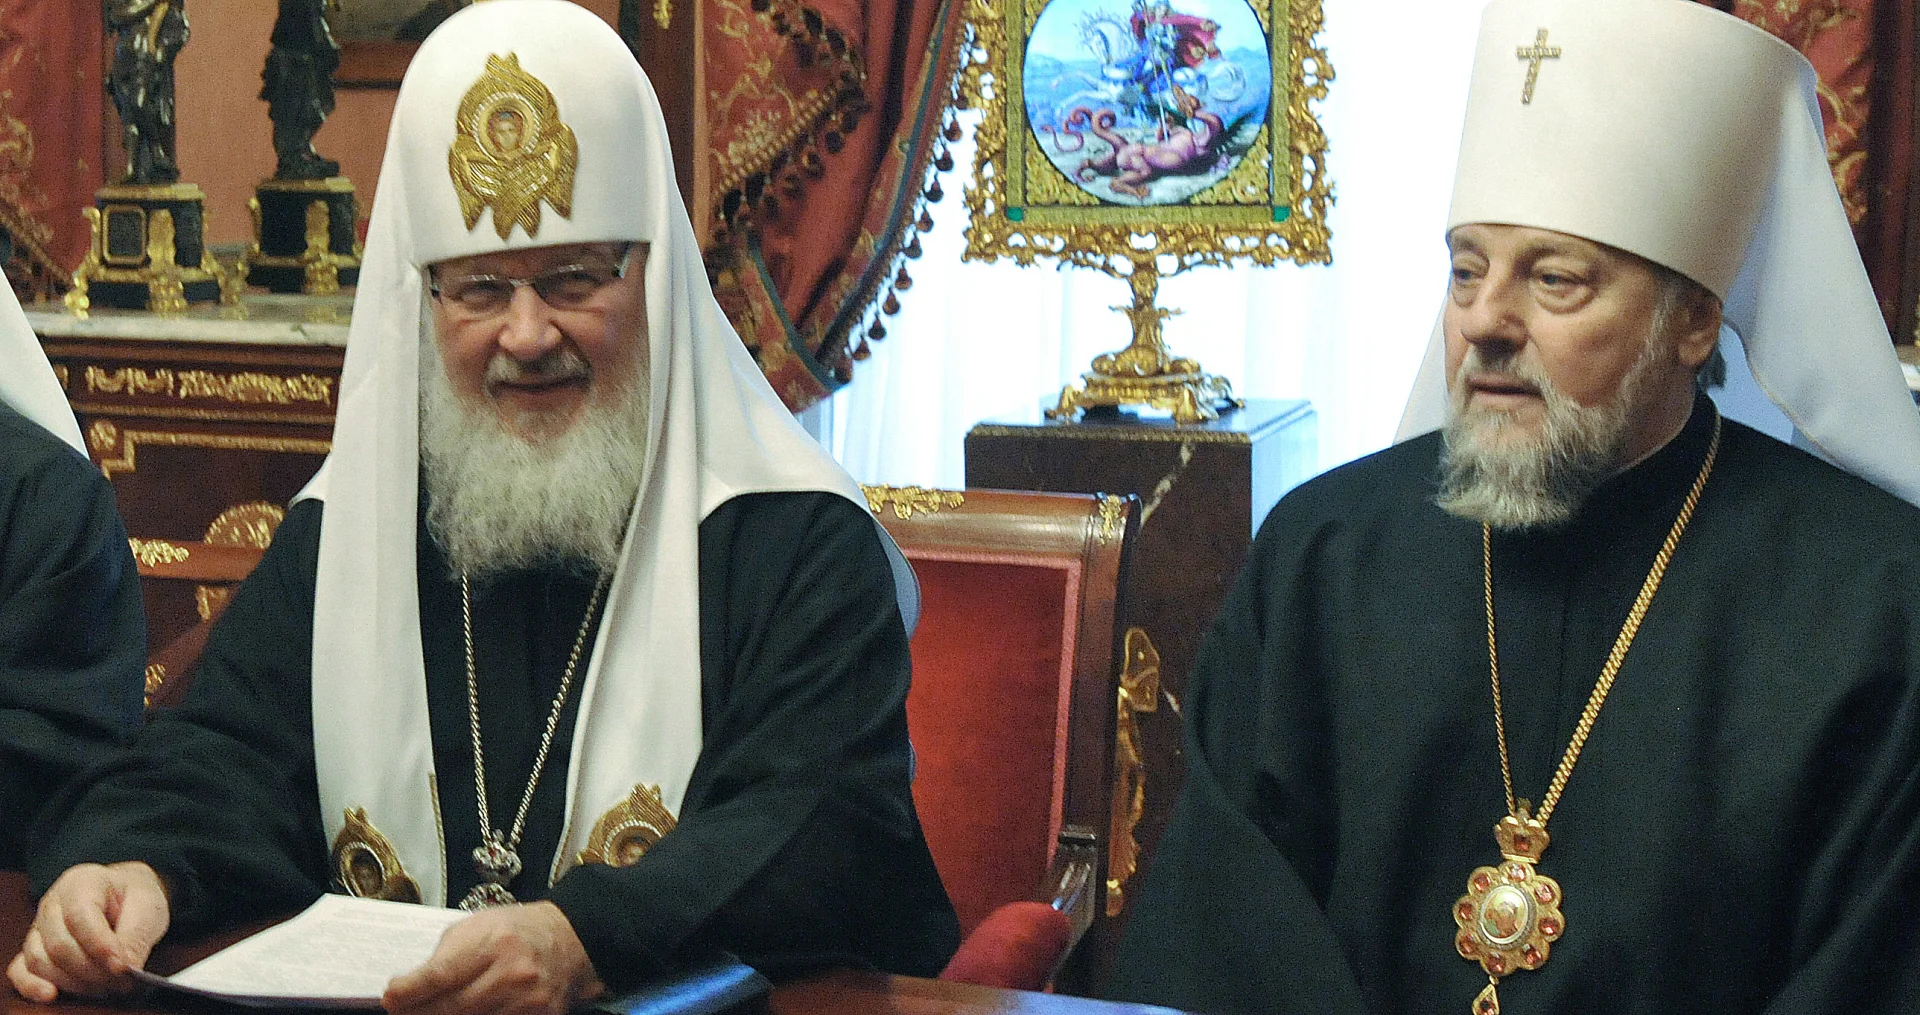 De facto AUTOKEFALNA: Letonska pravoslavna crkva proslavlja Vaskrs nezavisno od Moskovske patrijaršije